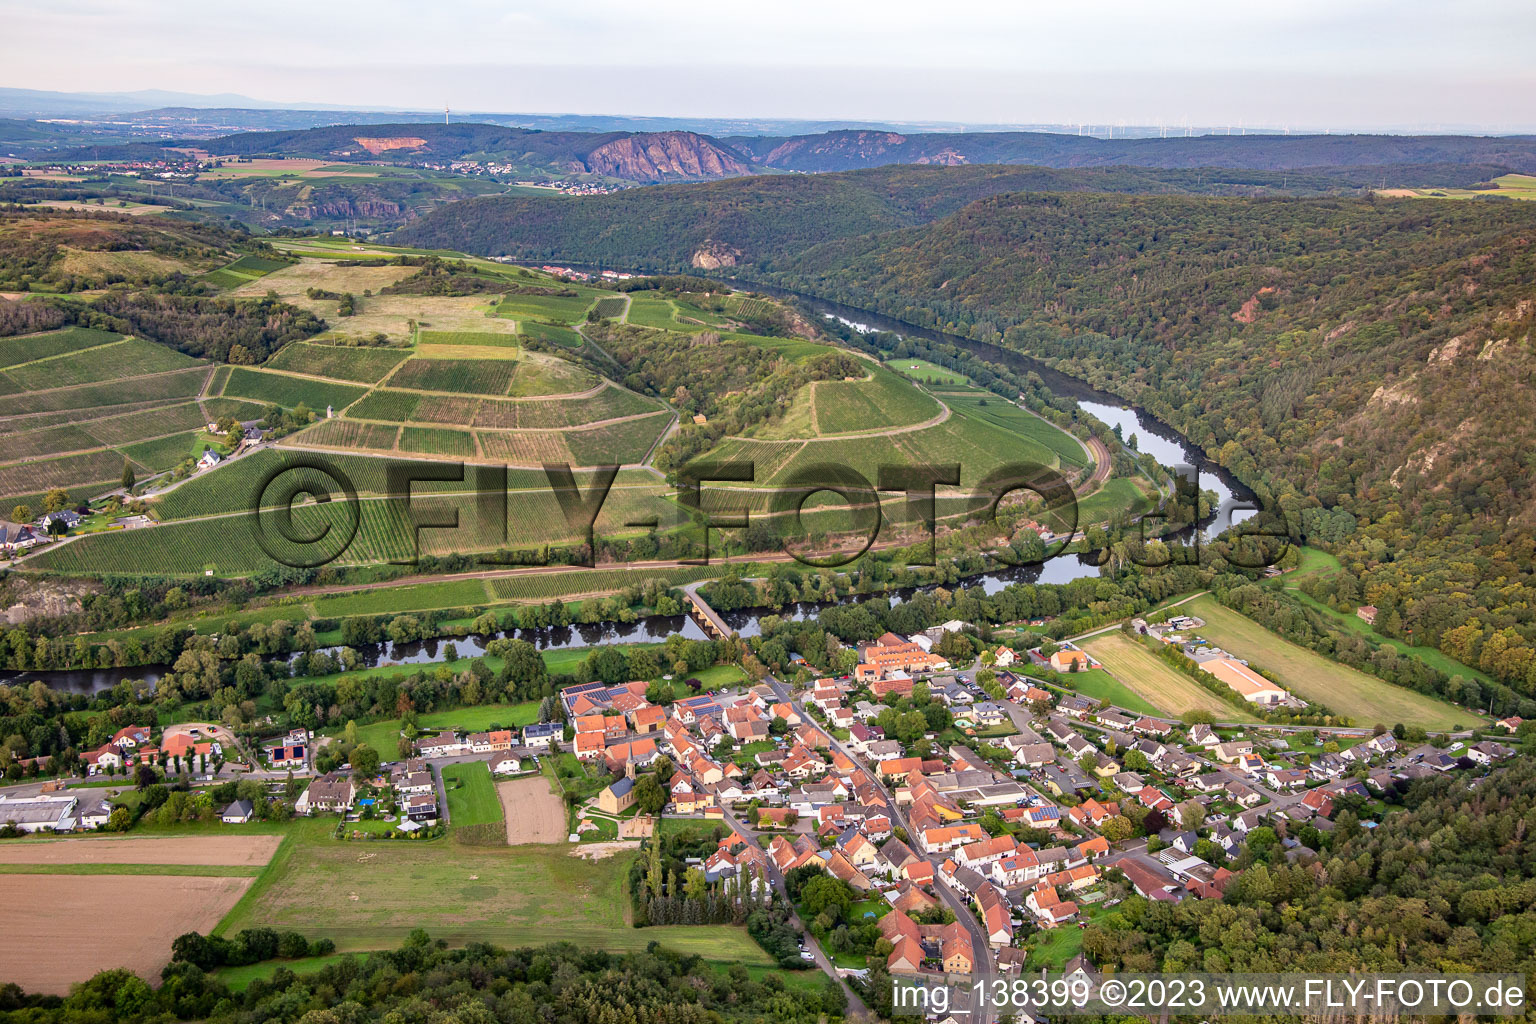 Vue aérienne de Harsten, la plus belle vue sur le vin vers 2020 à Oberhausen an der Nahe dans le département Rhénanie-Palatinat, Allemagne